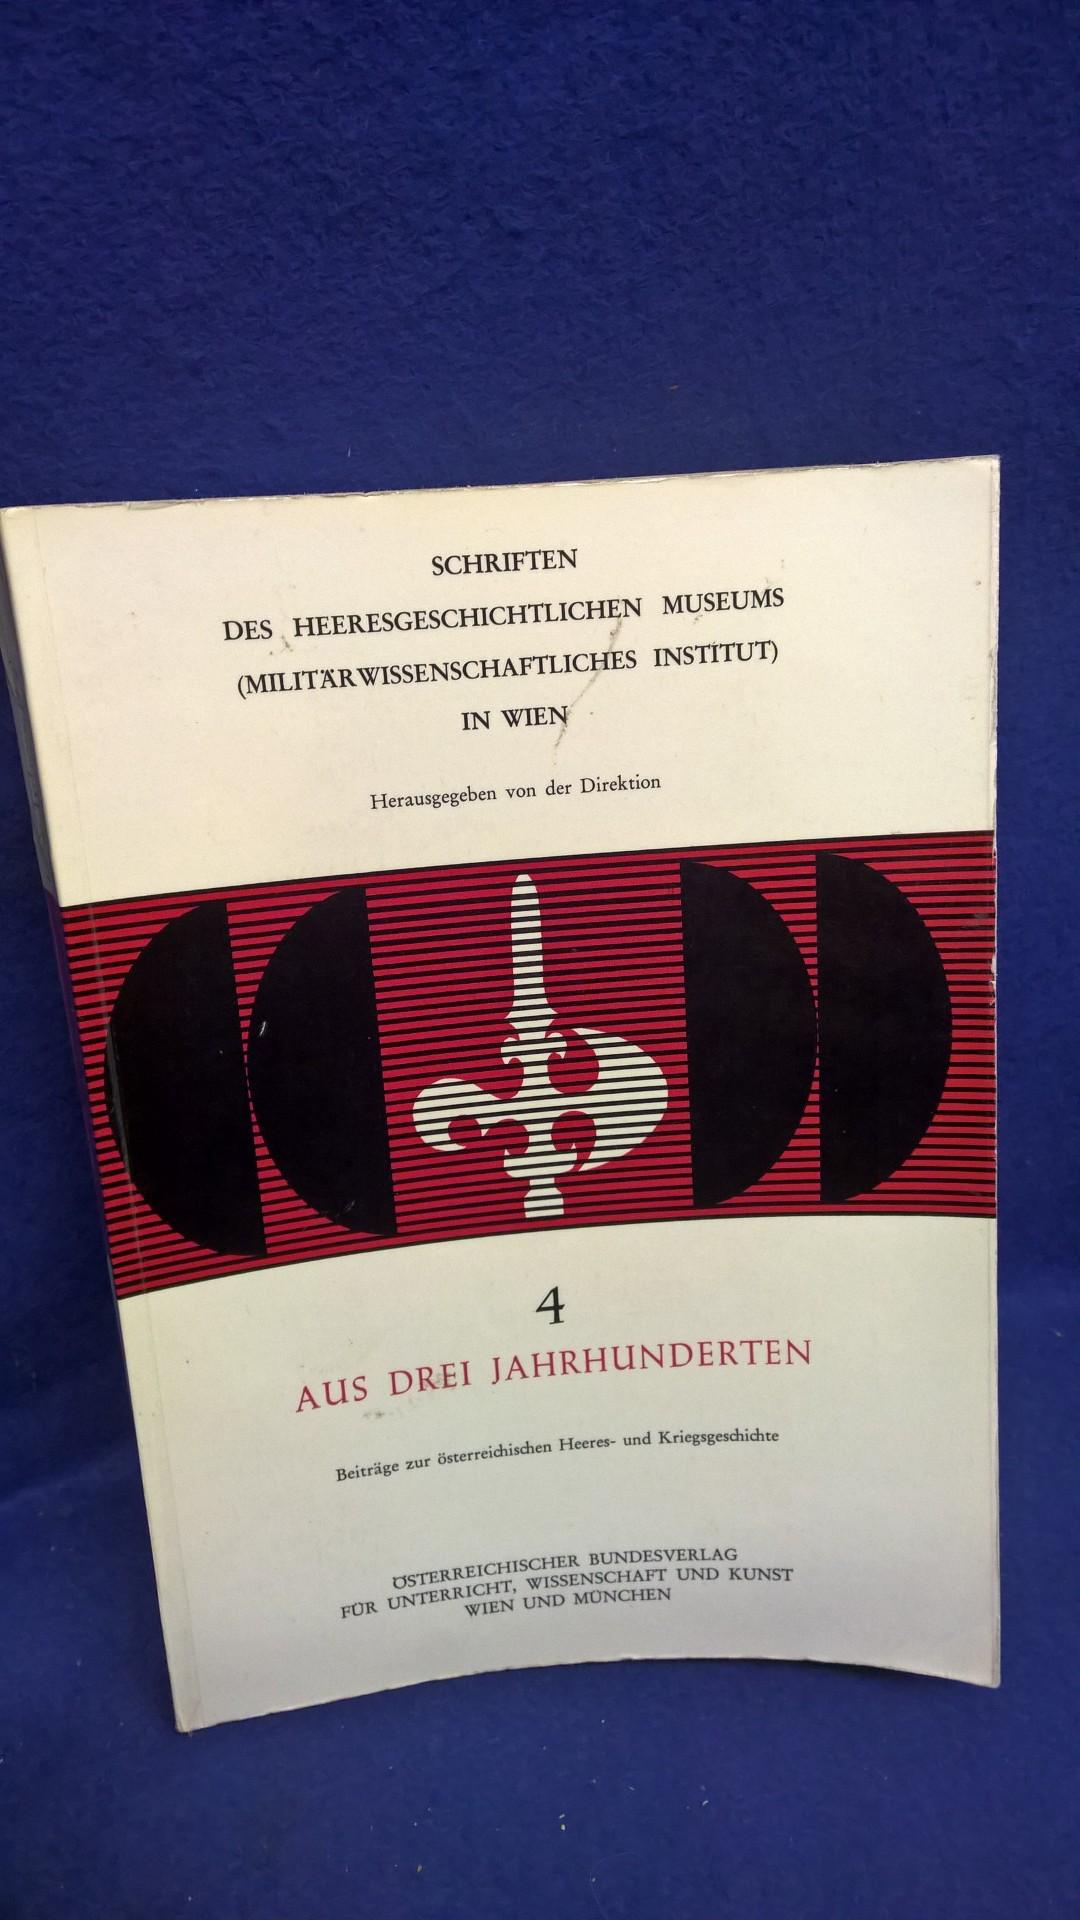 Aus drei Jahrhunderten. Beiträge zur österriechischen Heeres- und Kriegsgeschichte von 1645 - 1938.